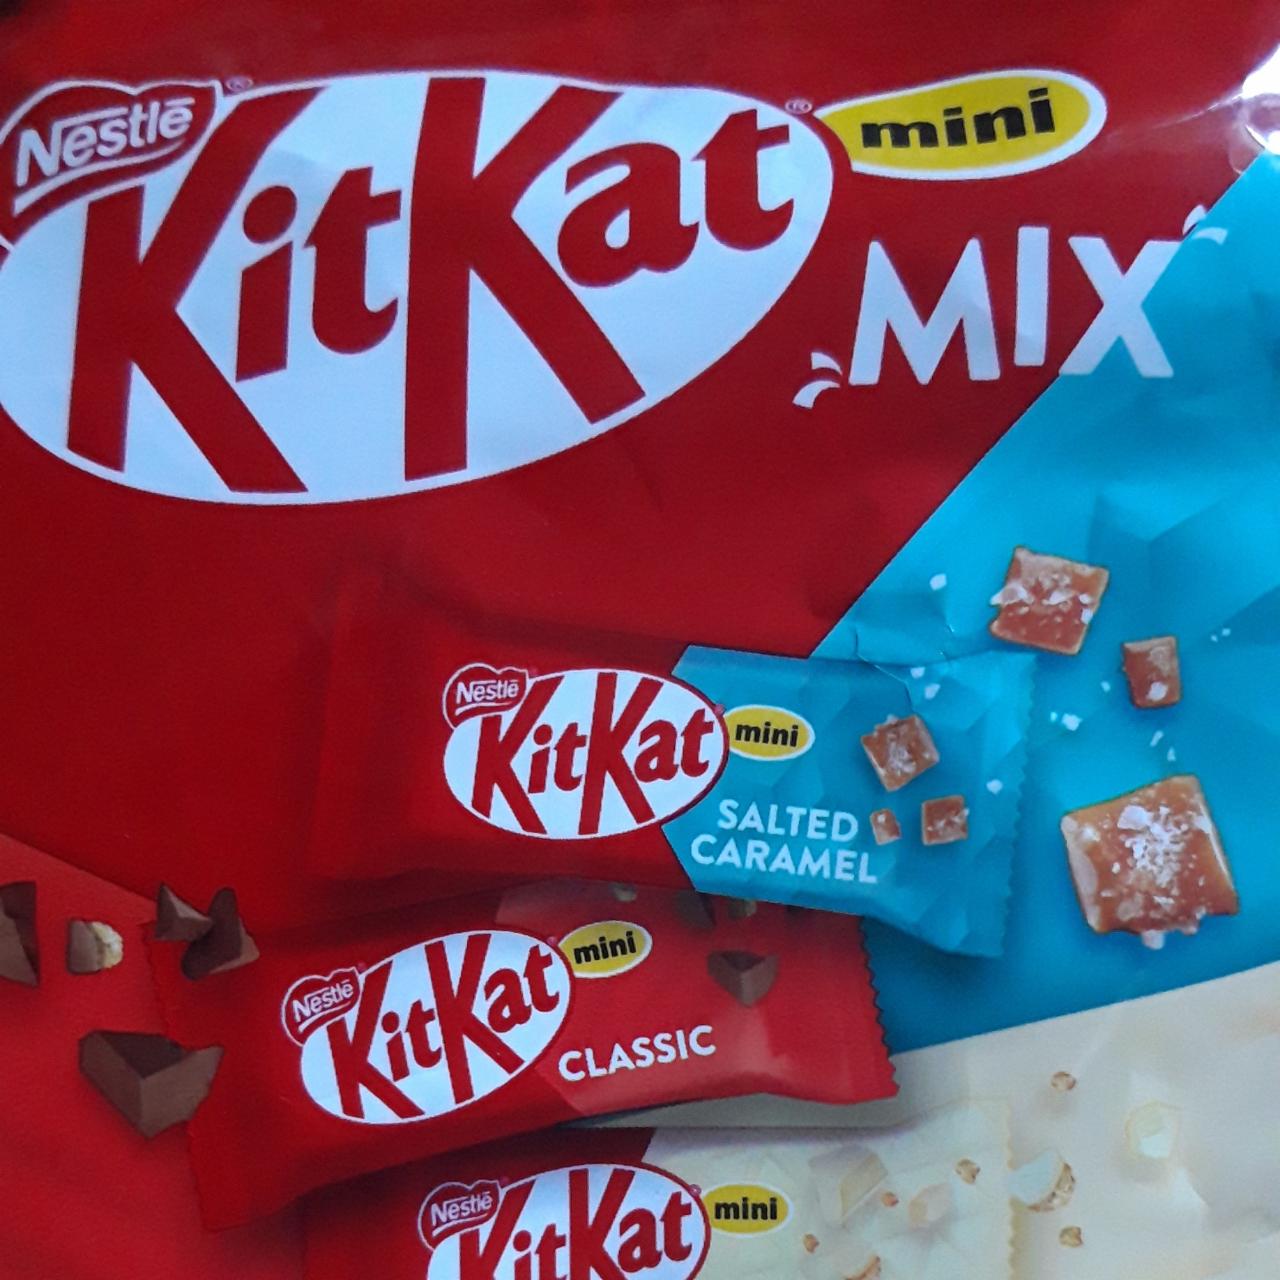 Zdjęcia - KitKat mini mix Nestlé